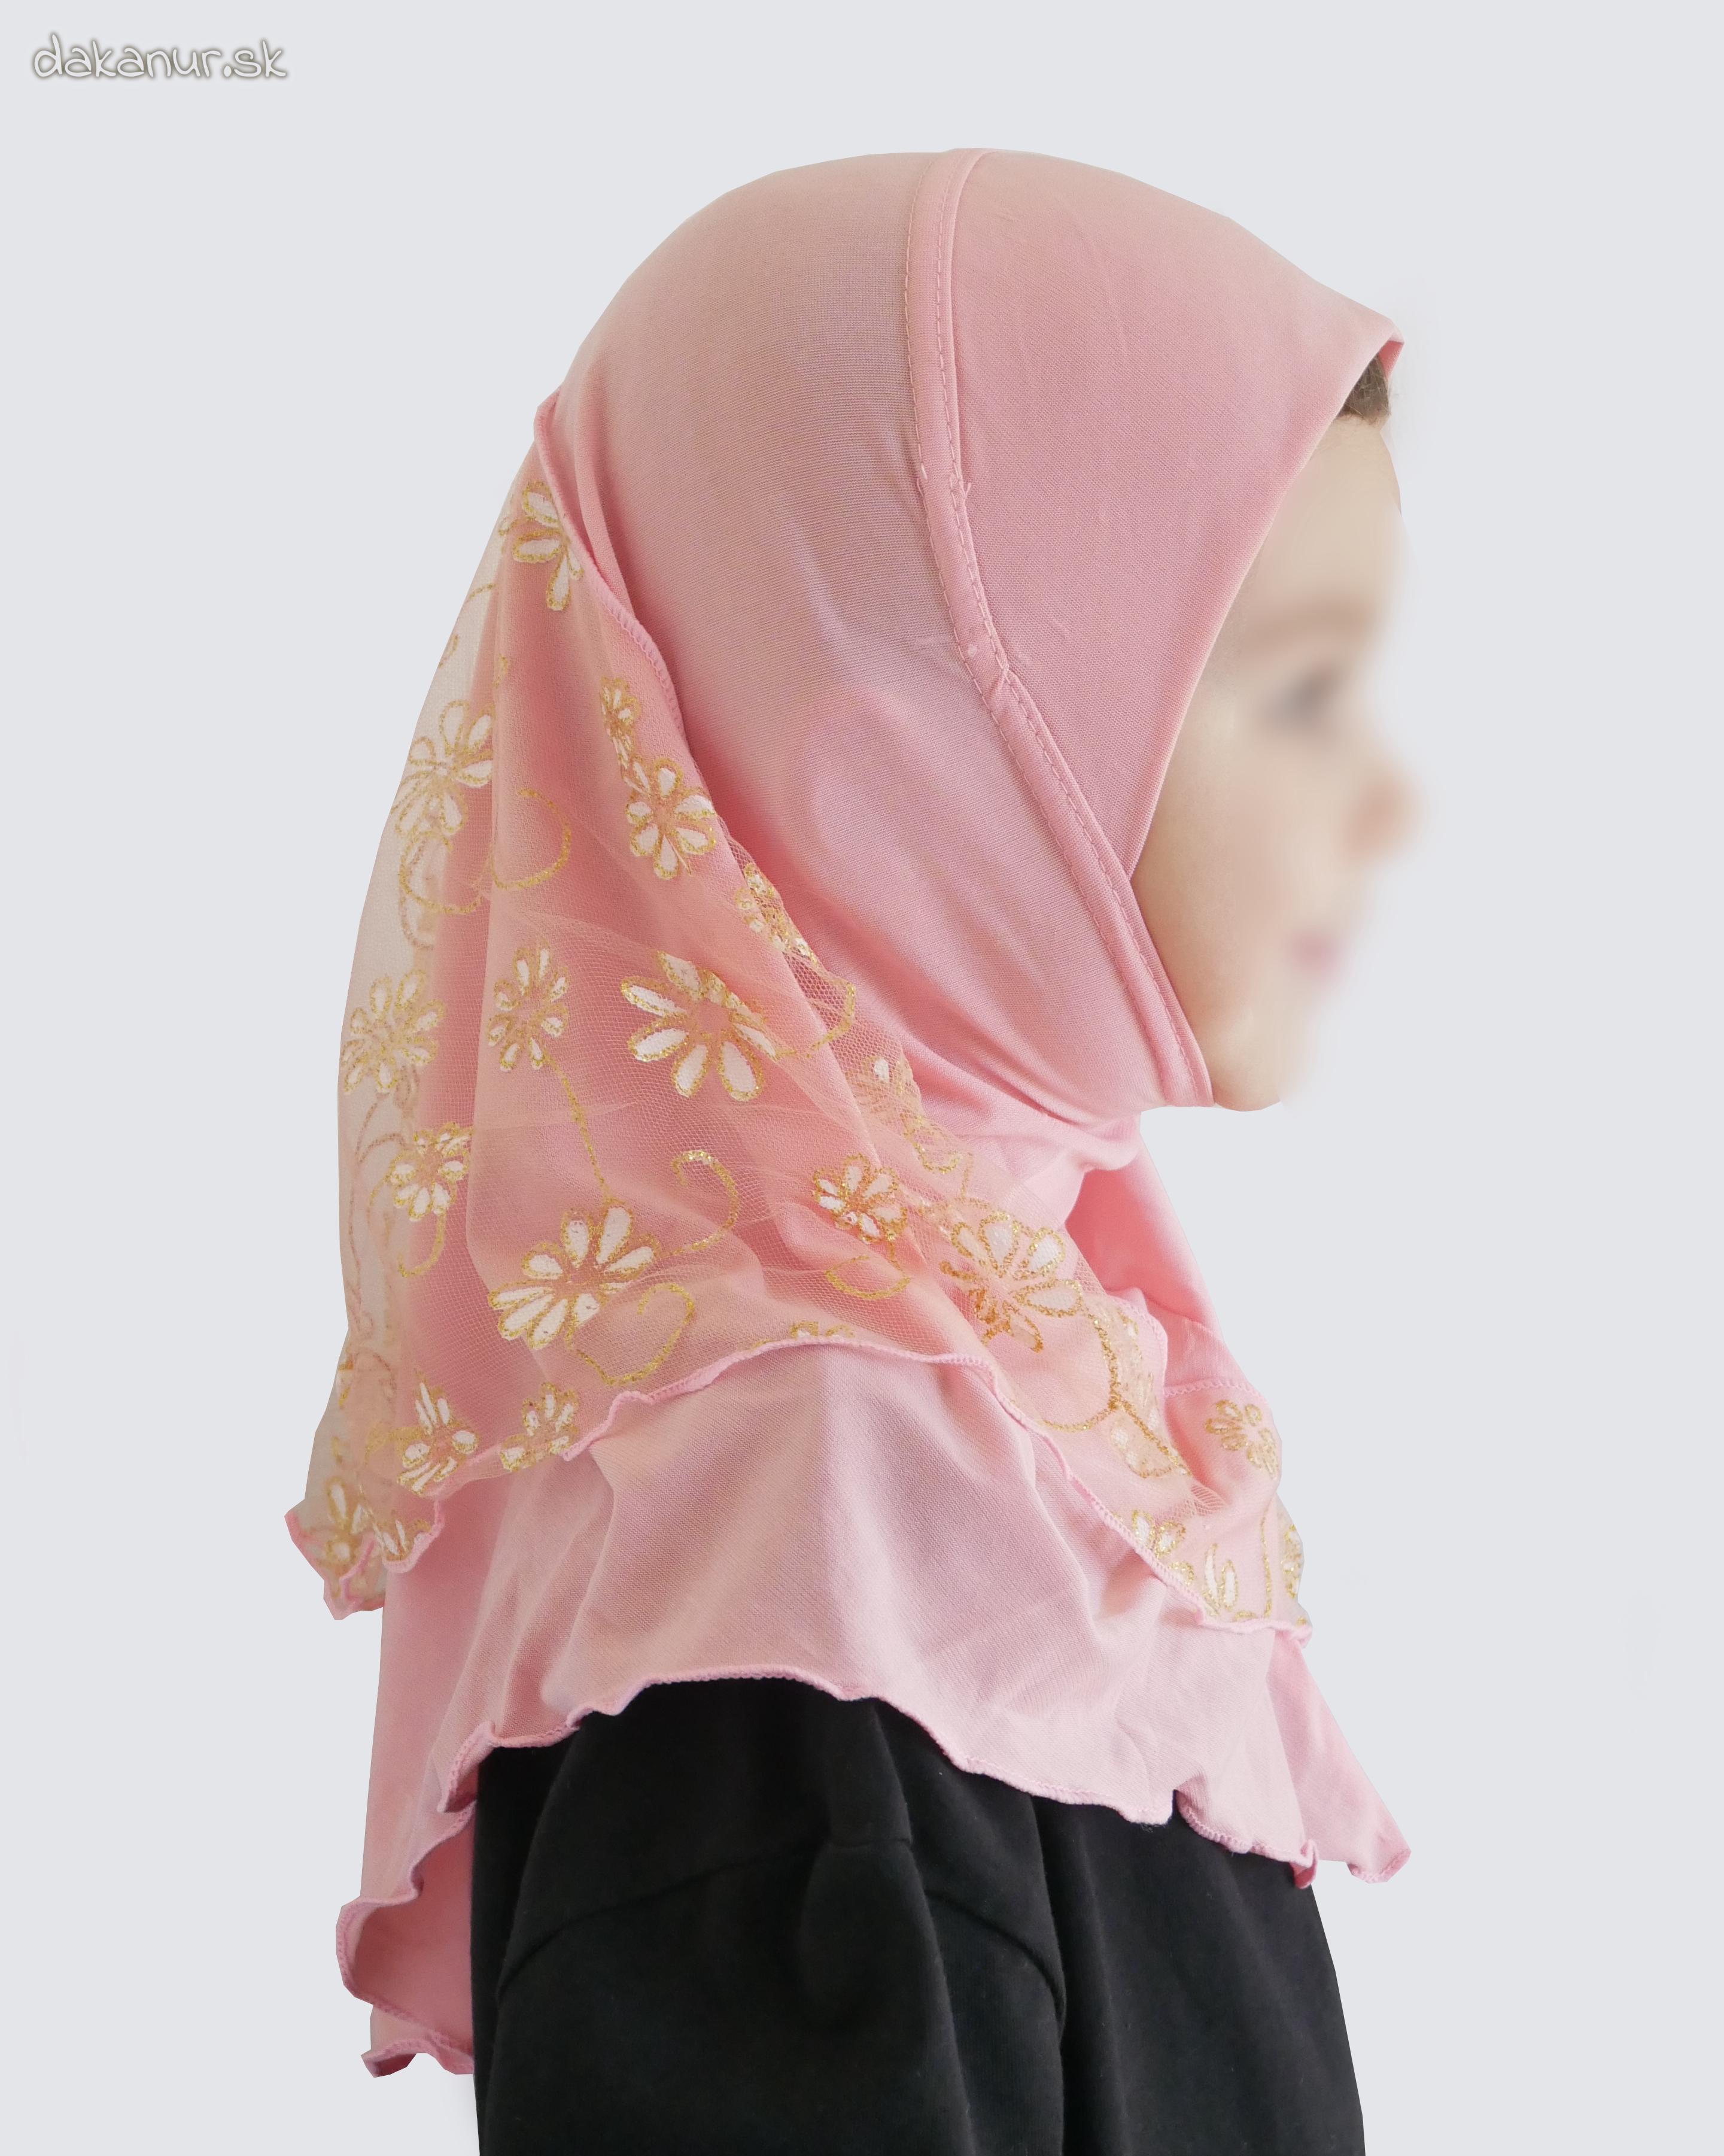 Detský ružový hijáb s kvietkovanou potlačou